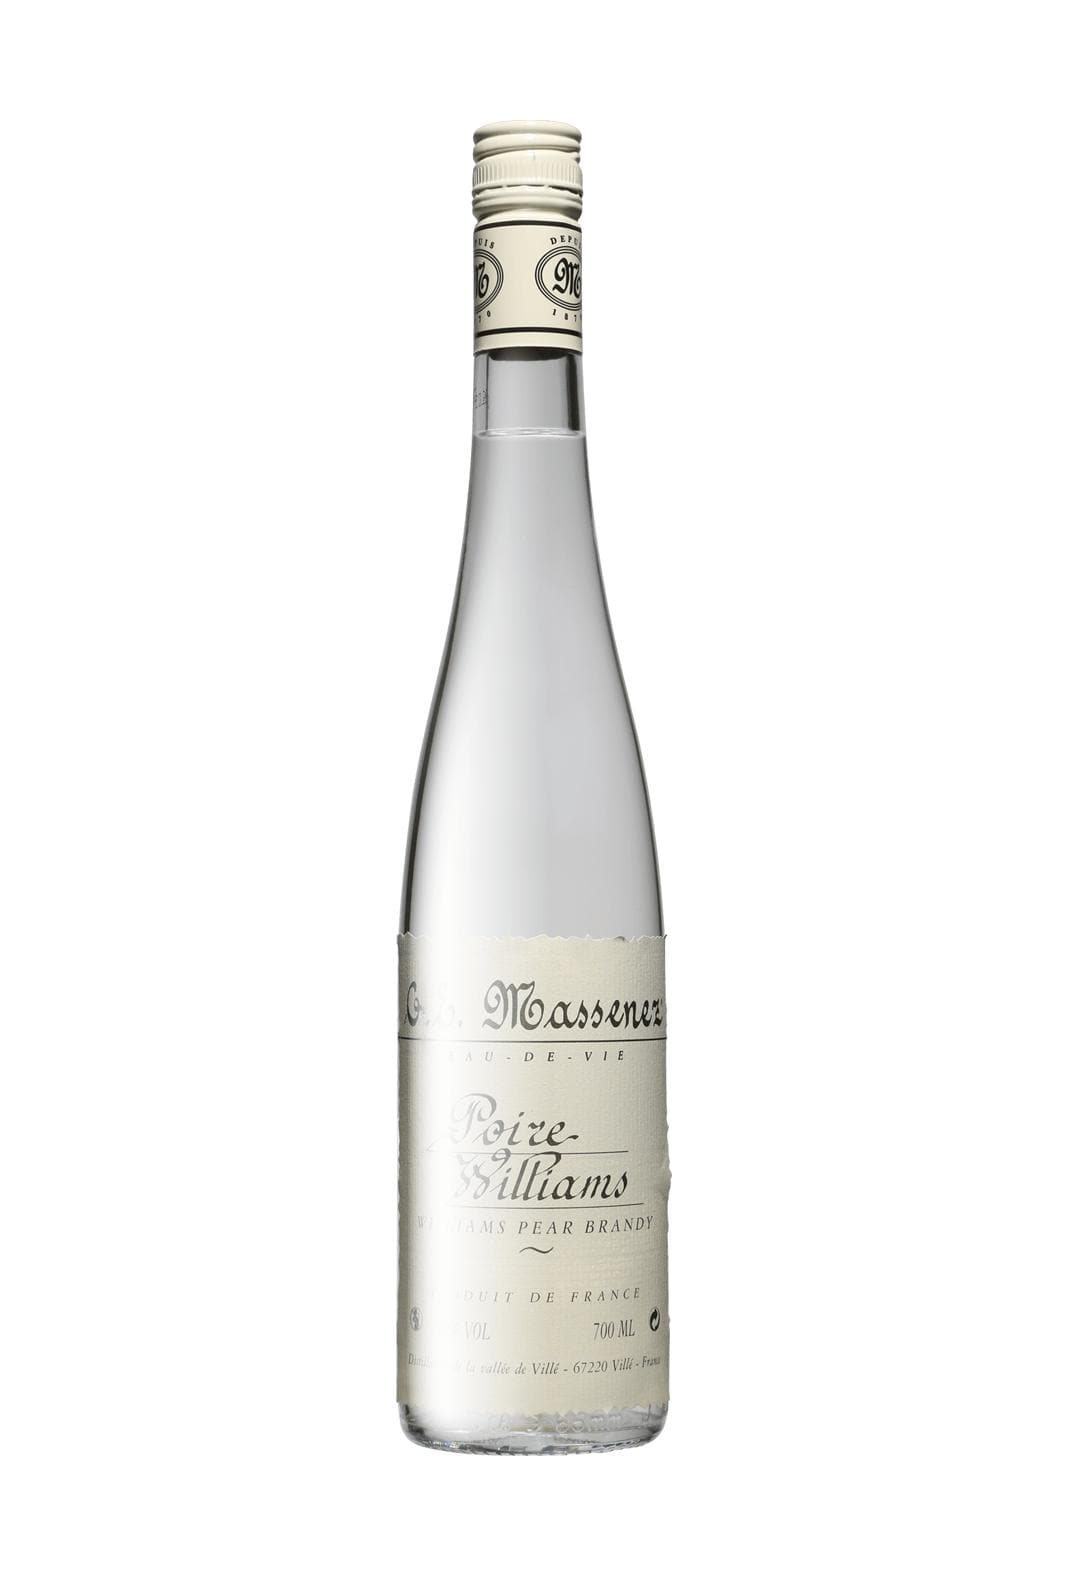 Massenez Eau de Vie Poire William (Pear William Spirit) 40% 700ml | Liqueurs | Shop online at Spirits of France